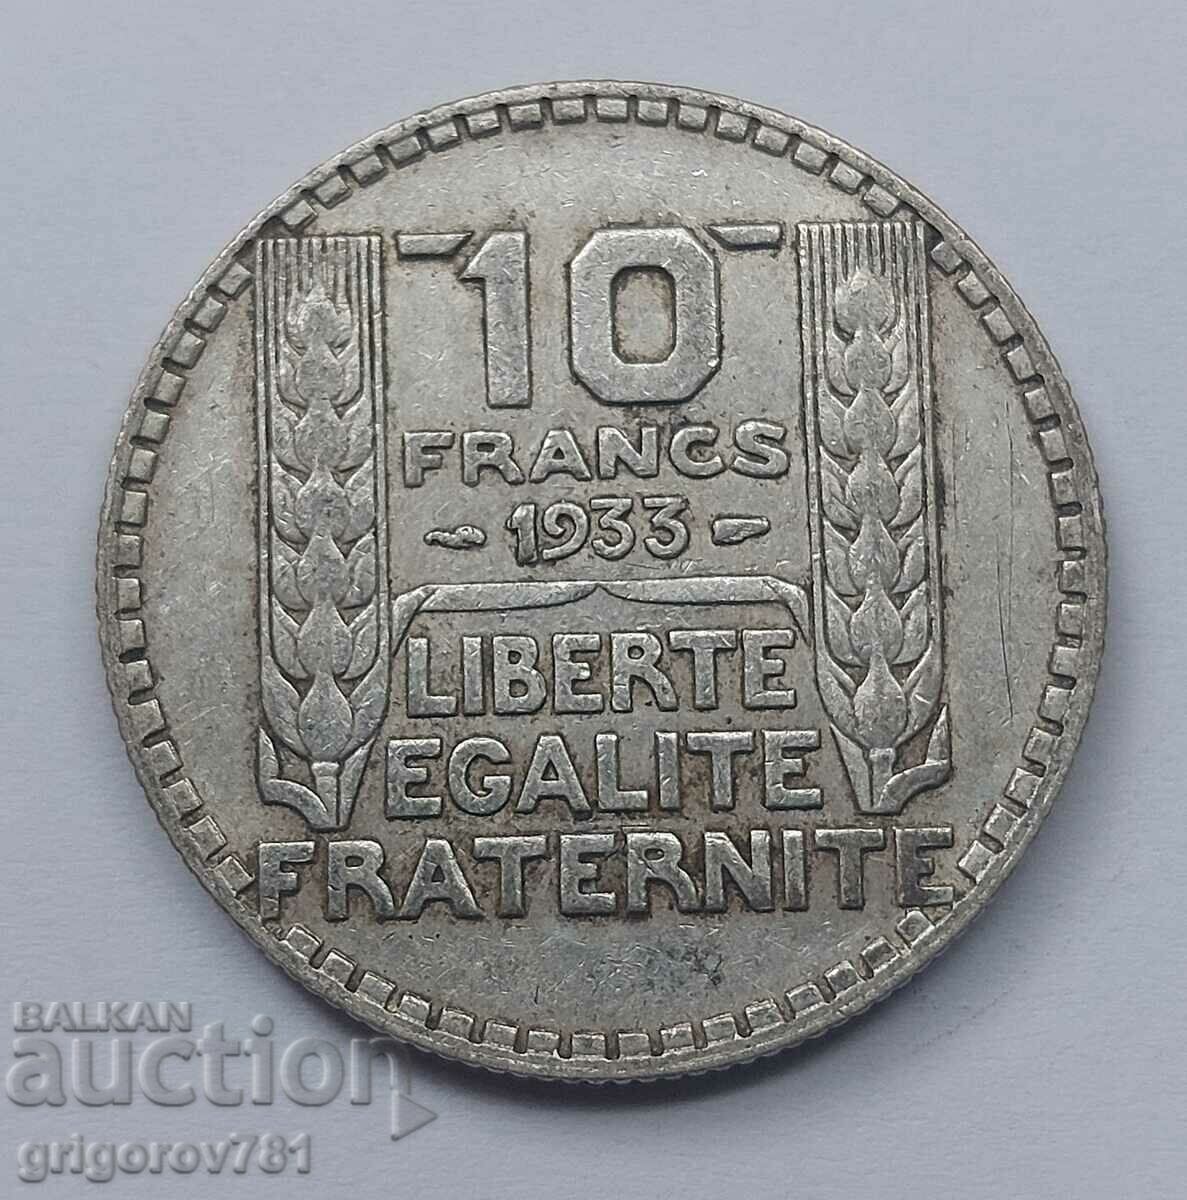 10 Φράγκα Ασήμι Γαλλία 1933 - Ασημένιο νόμισμα #14